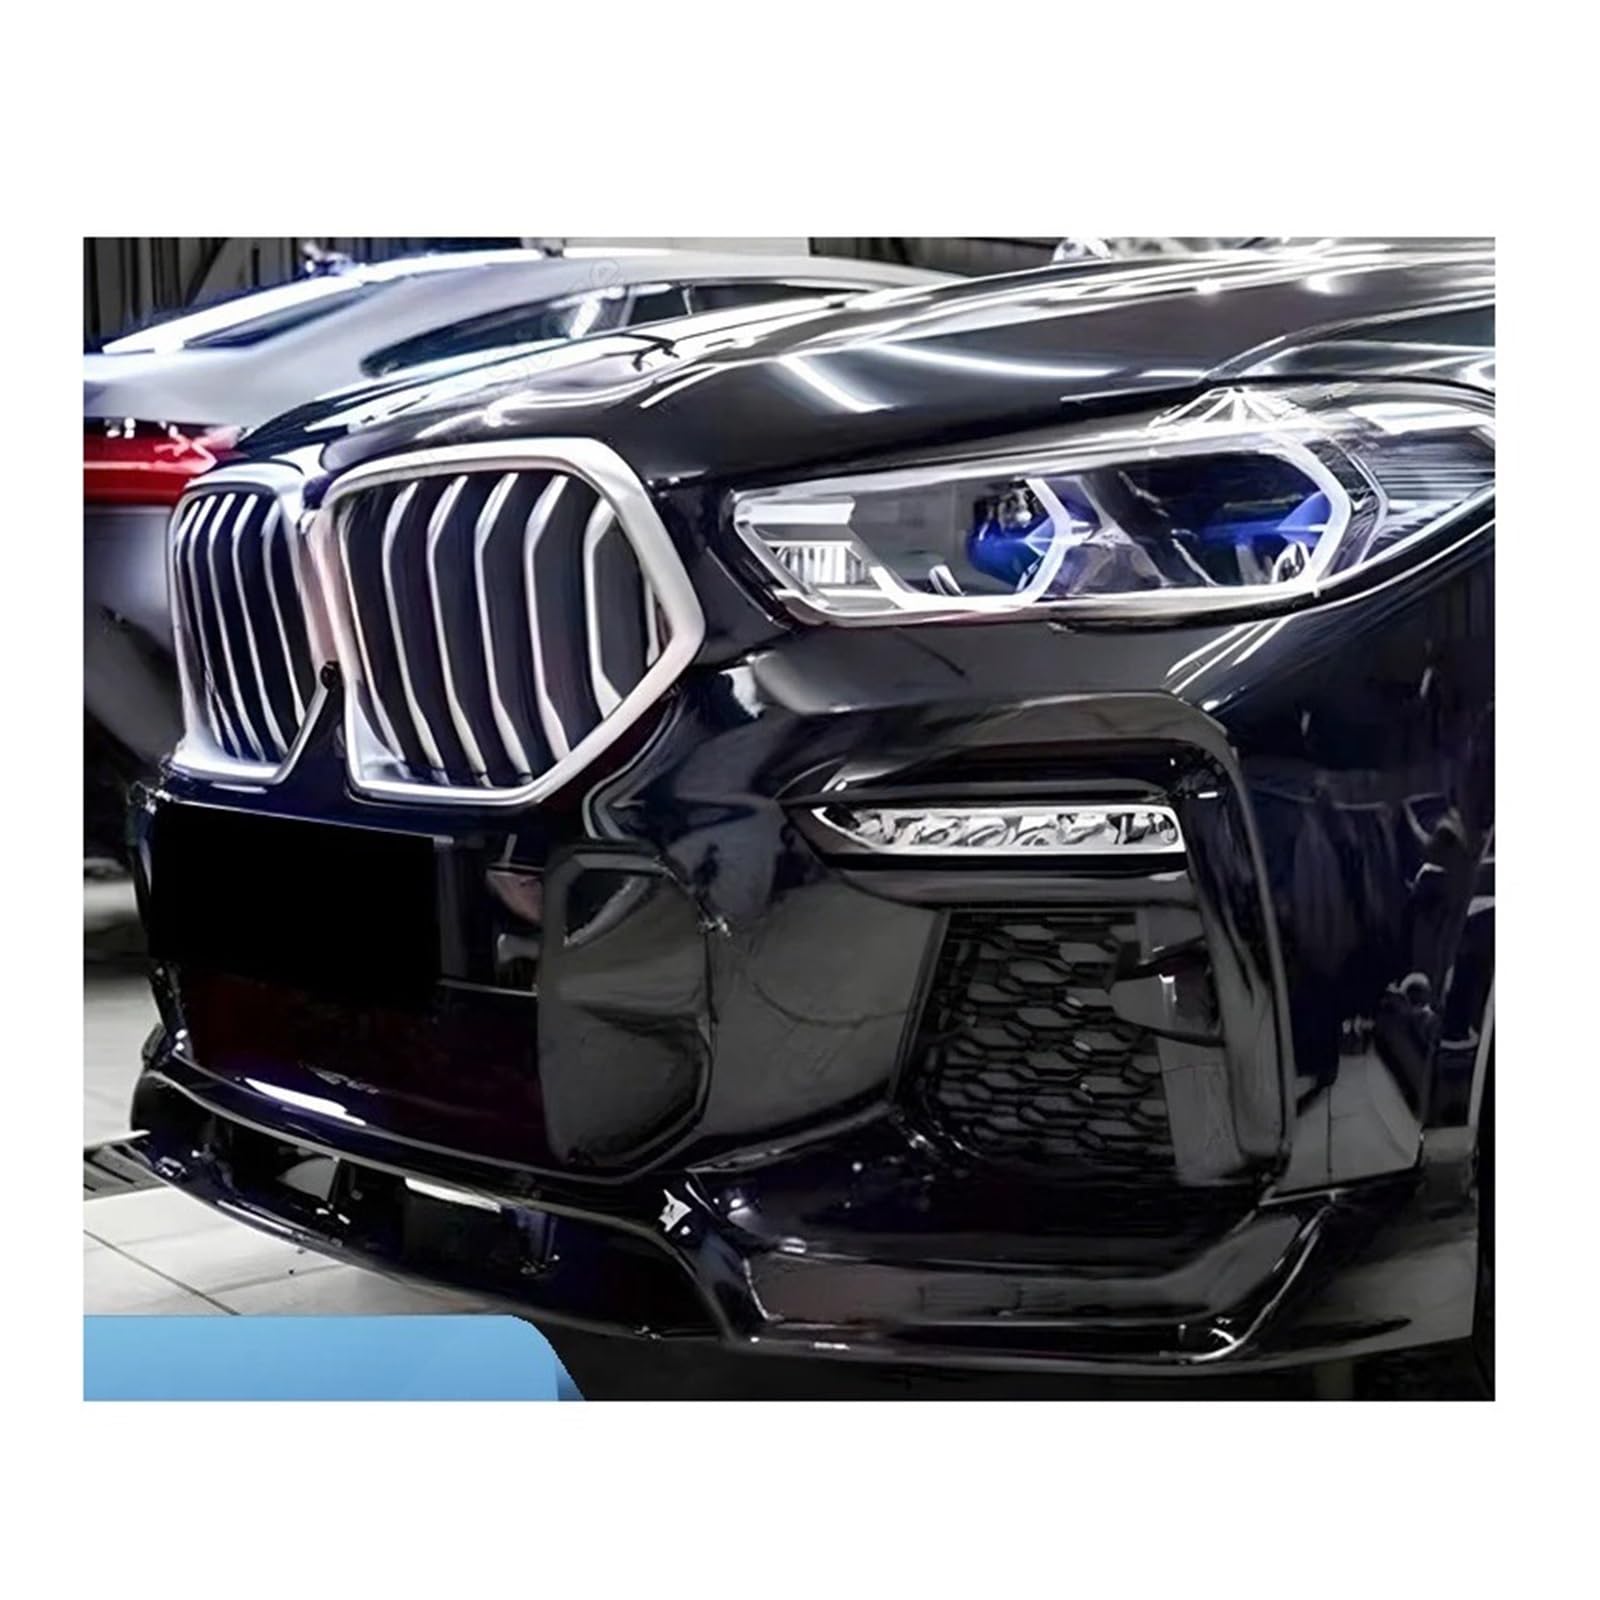 Kompatibel for BMW X6 G06 Auto Frontschürze Spoiler Lip Splitter Glanz Schwarz ABS Kunststoff Body Kits Tuning Zubehör 2020 2021 2022 2023 + von HJPILISS